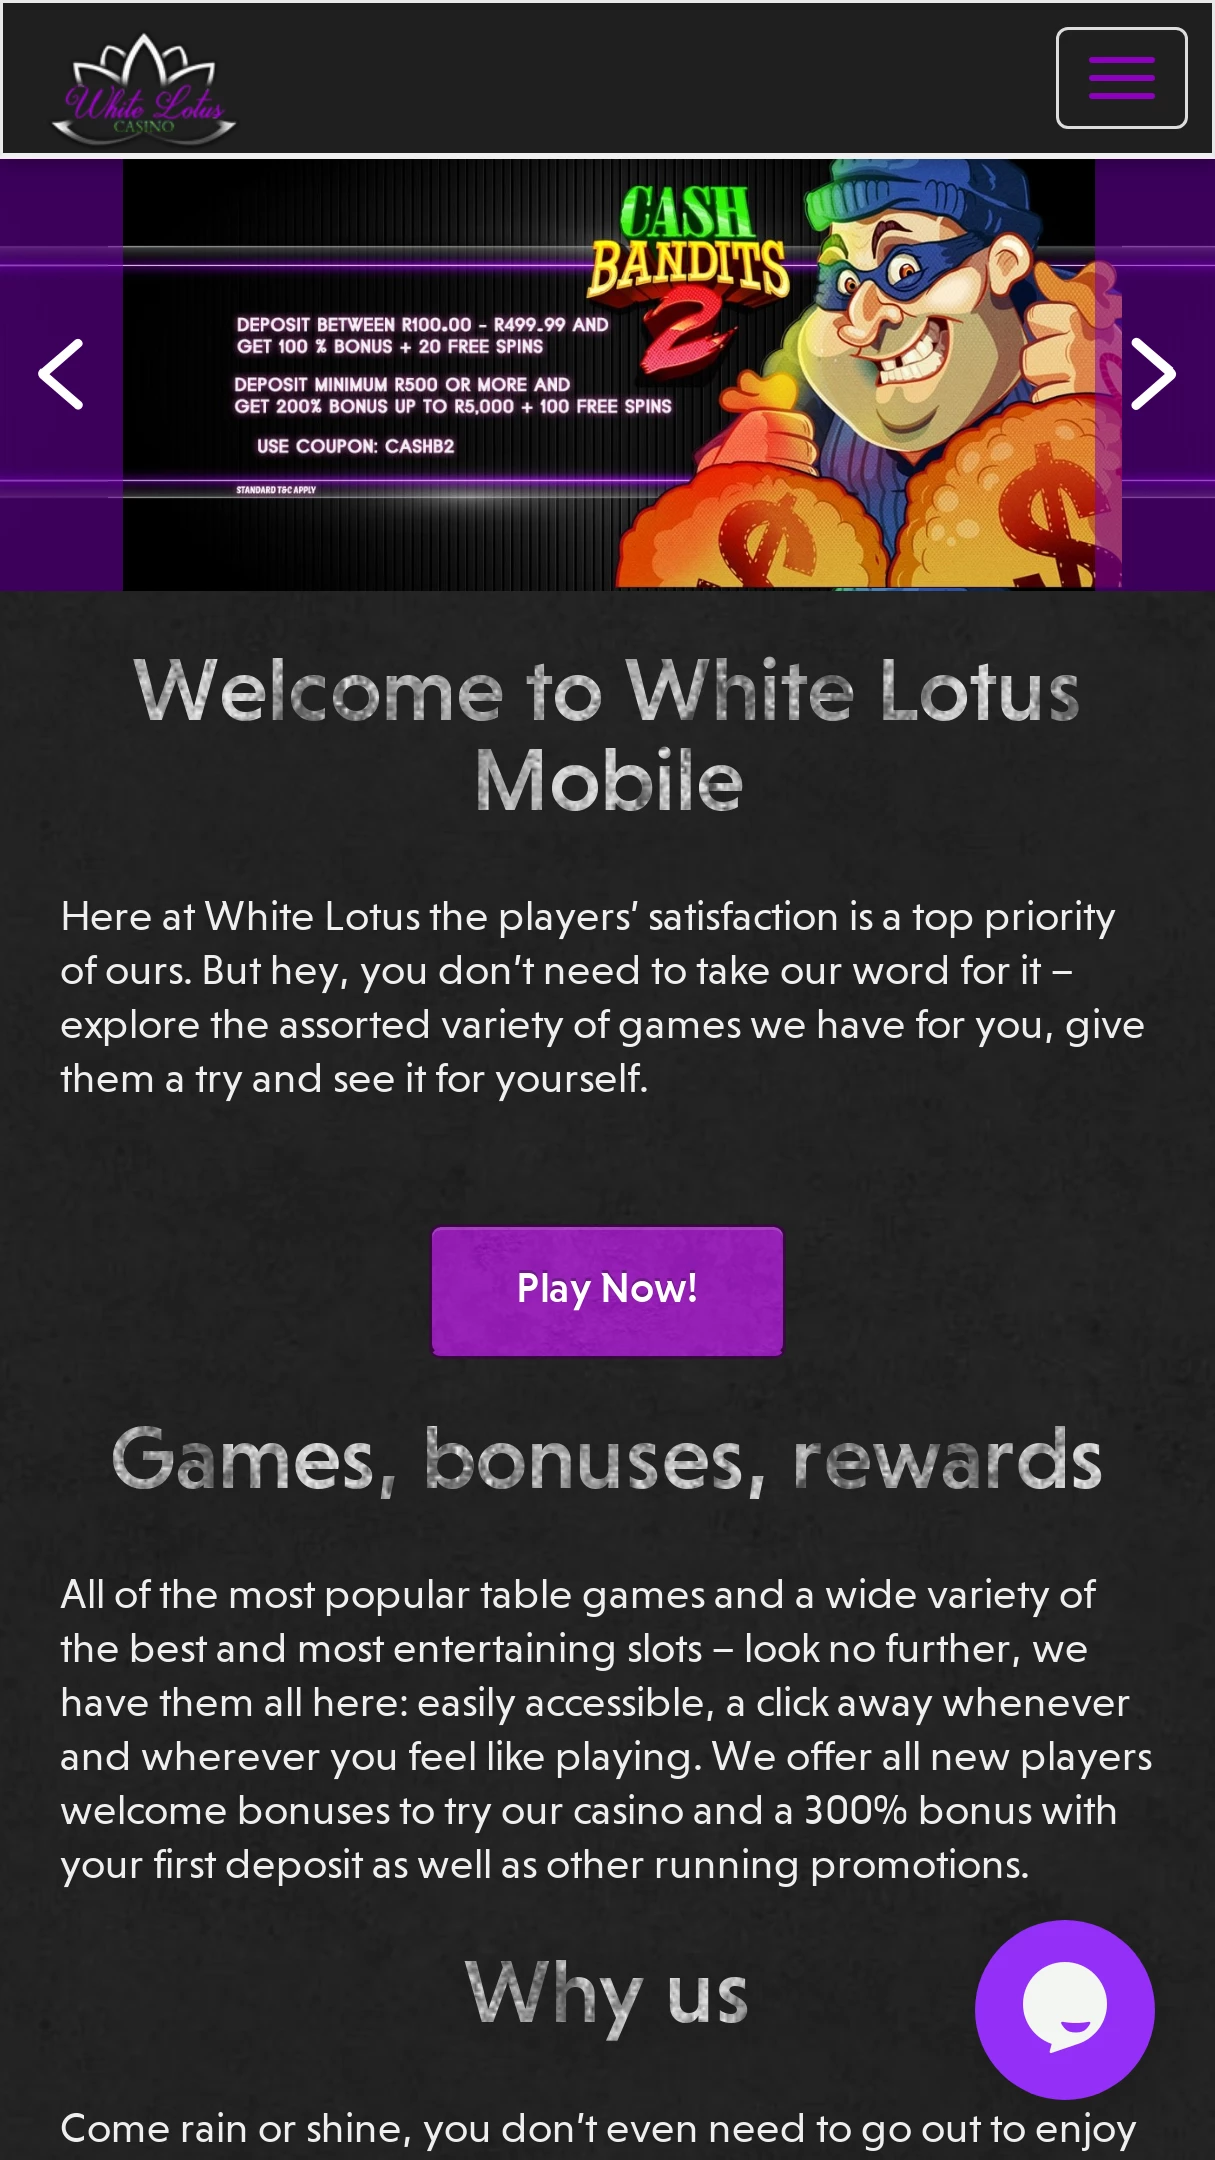 White lotus casino bonus codes 2018 march